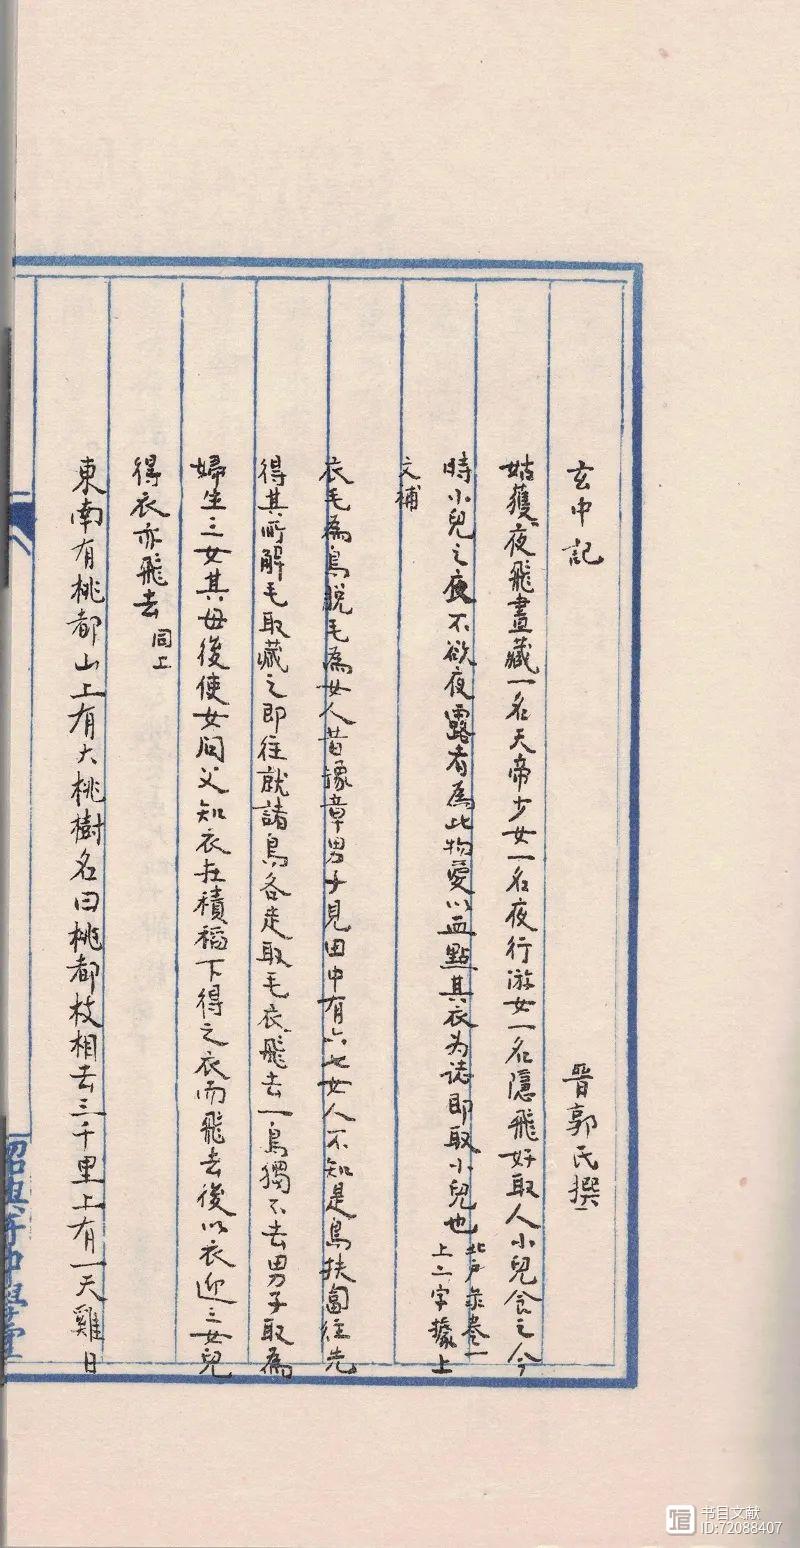 ​石祥丨鲁迅所用格纸与辑校古籍金石手稿的时间推定